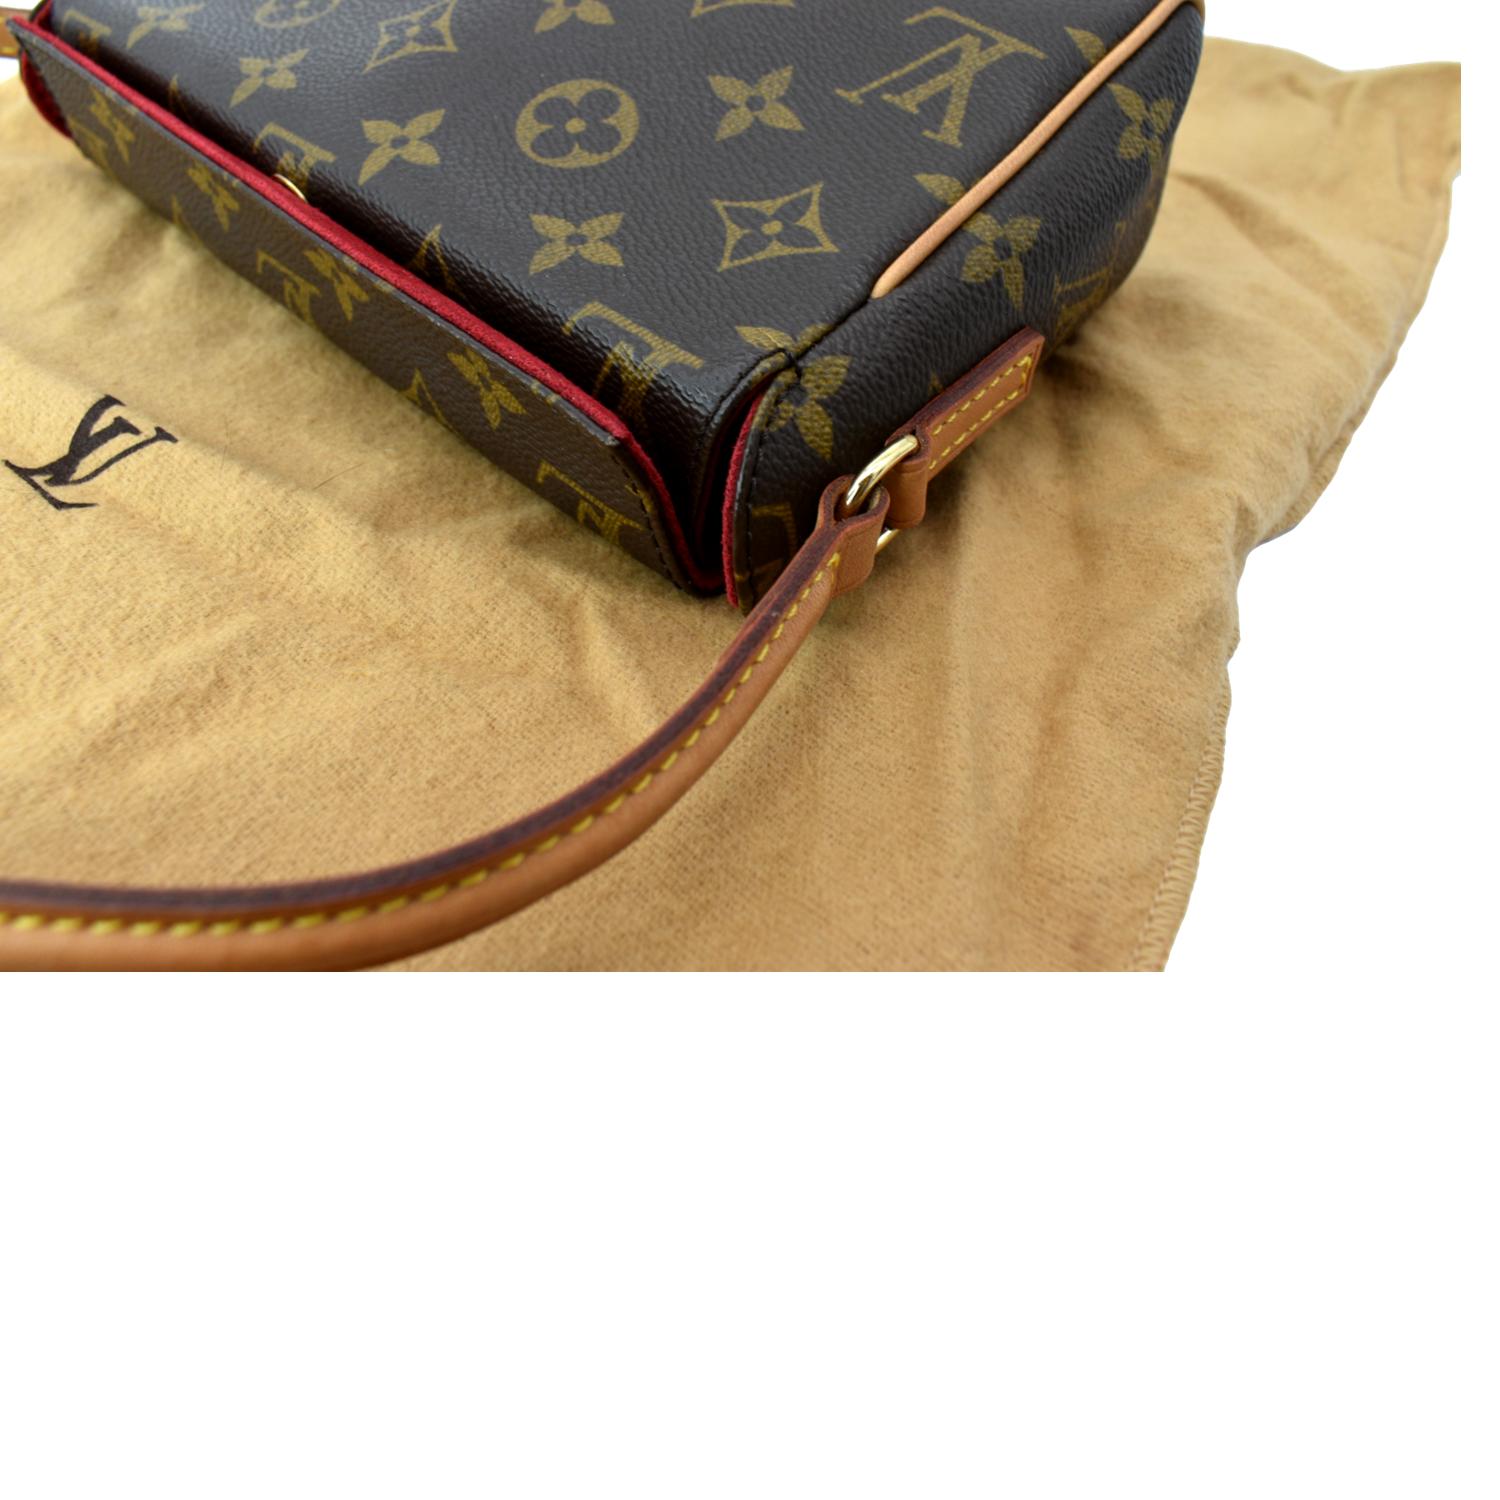 Recital cloth handbag Louis Vuitton Brown in Cloth - 21372797